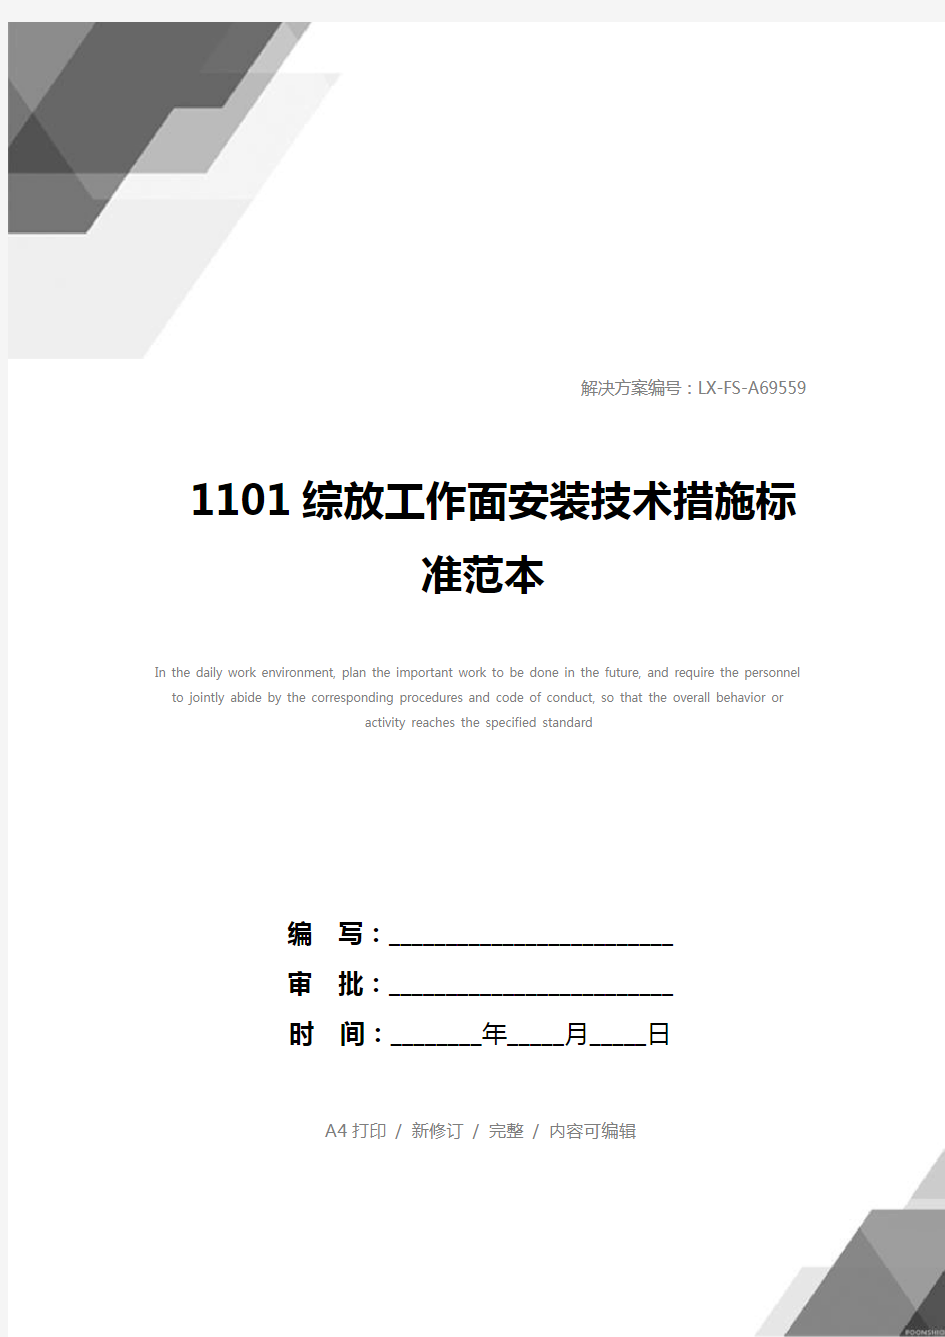 1101综放工作面安装技术措施标准范本